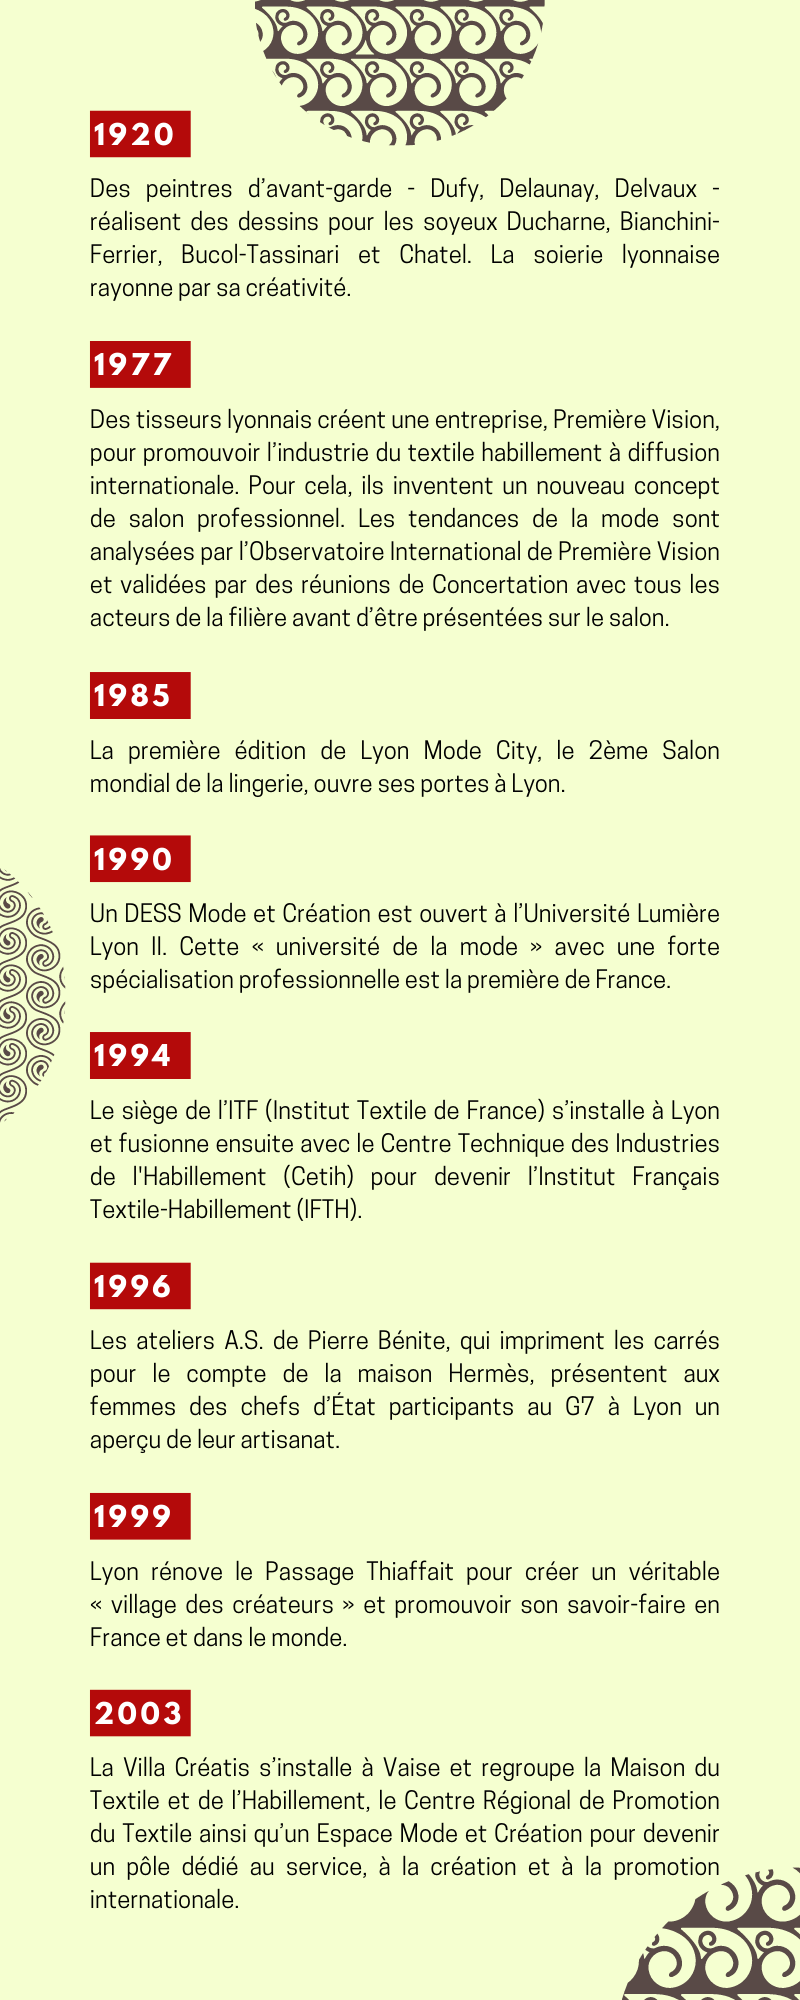 Chronologie sur le thème du textile de 1920 à 2003